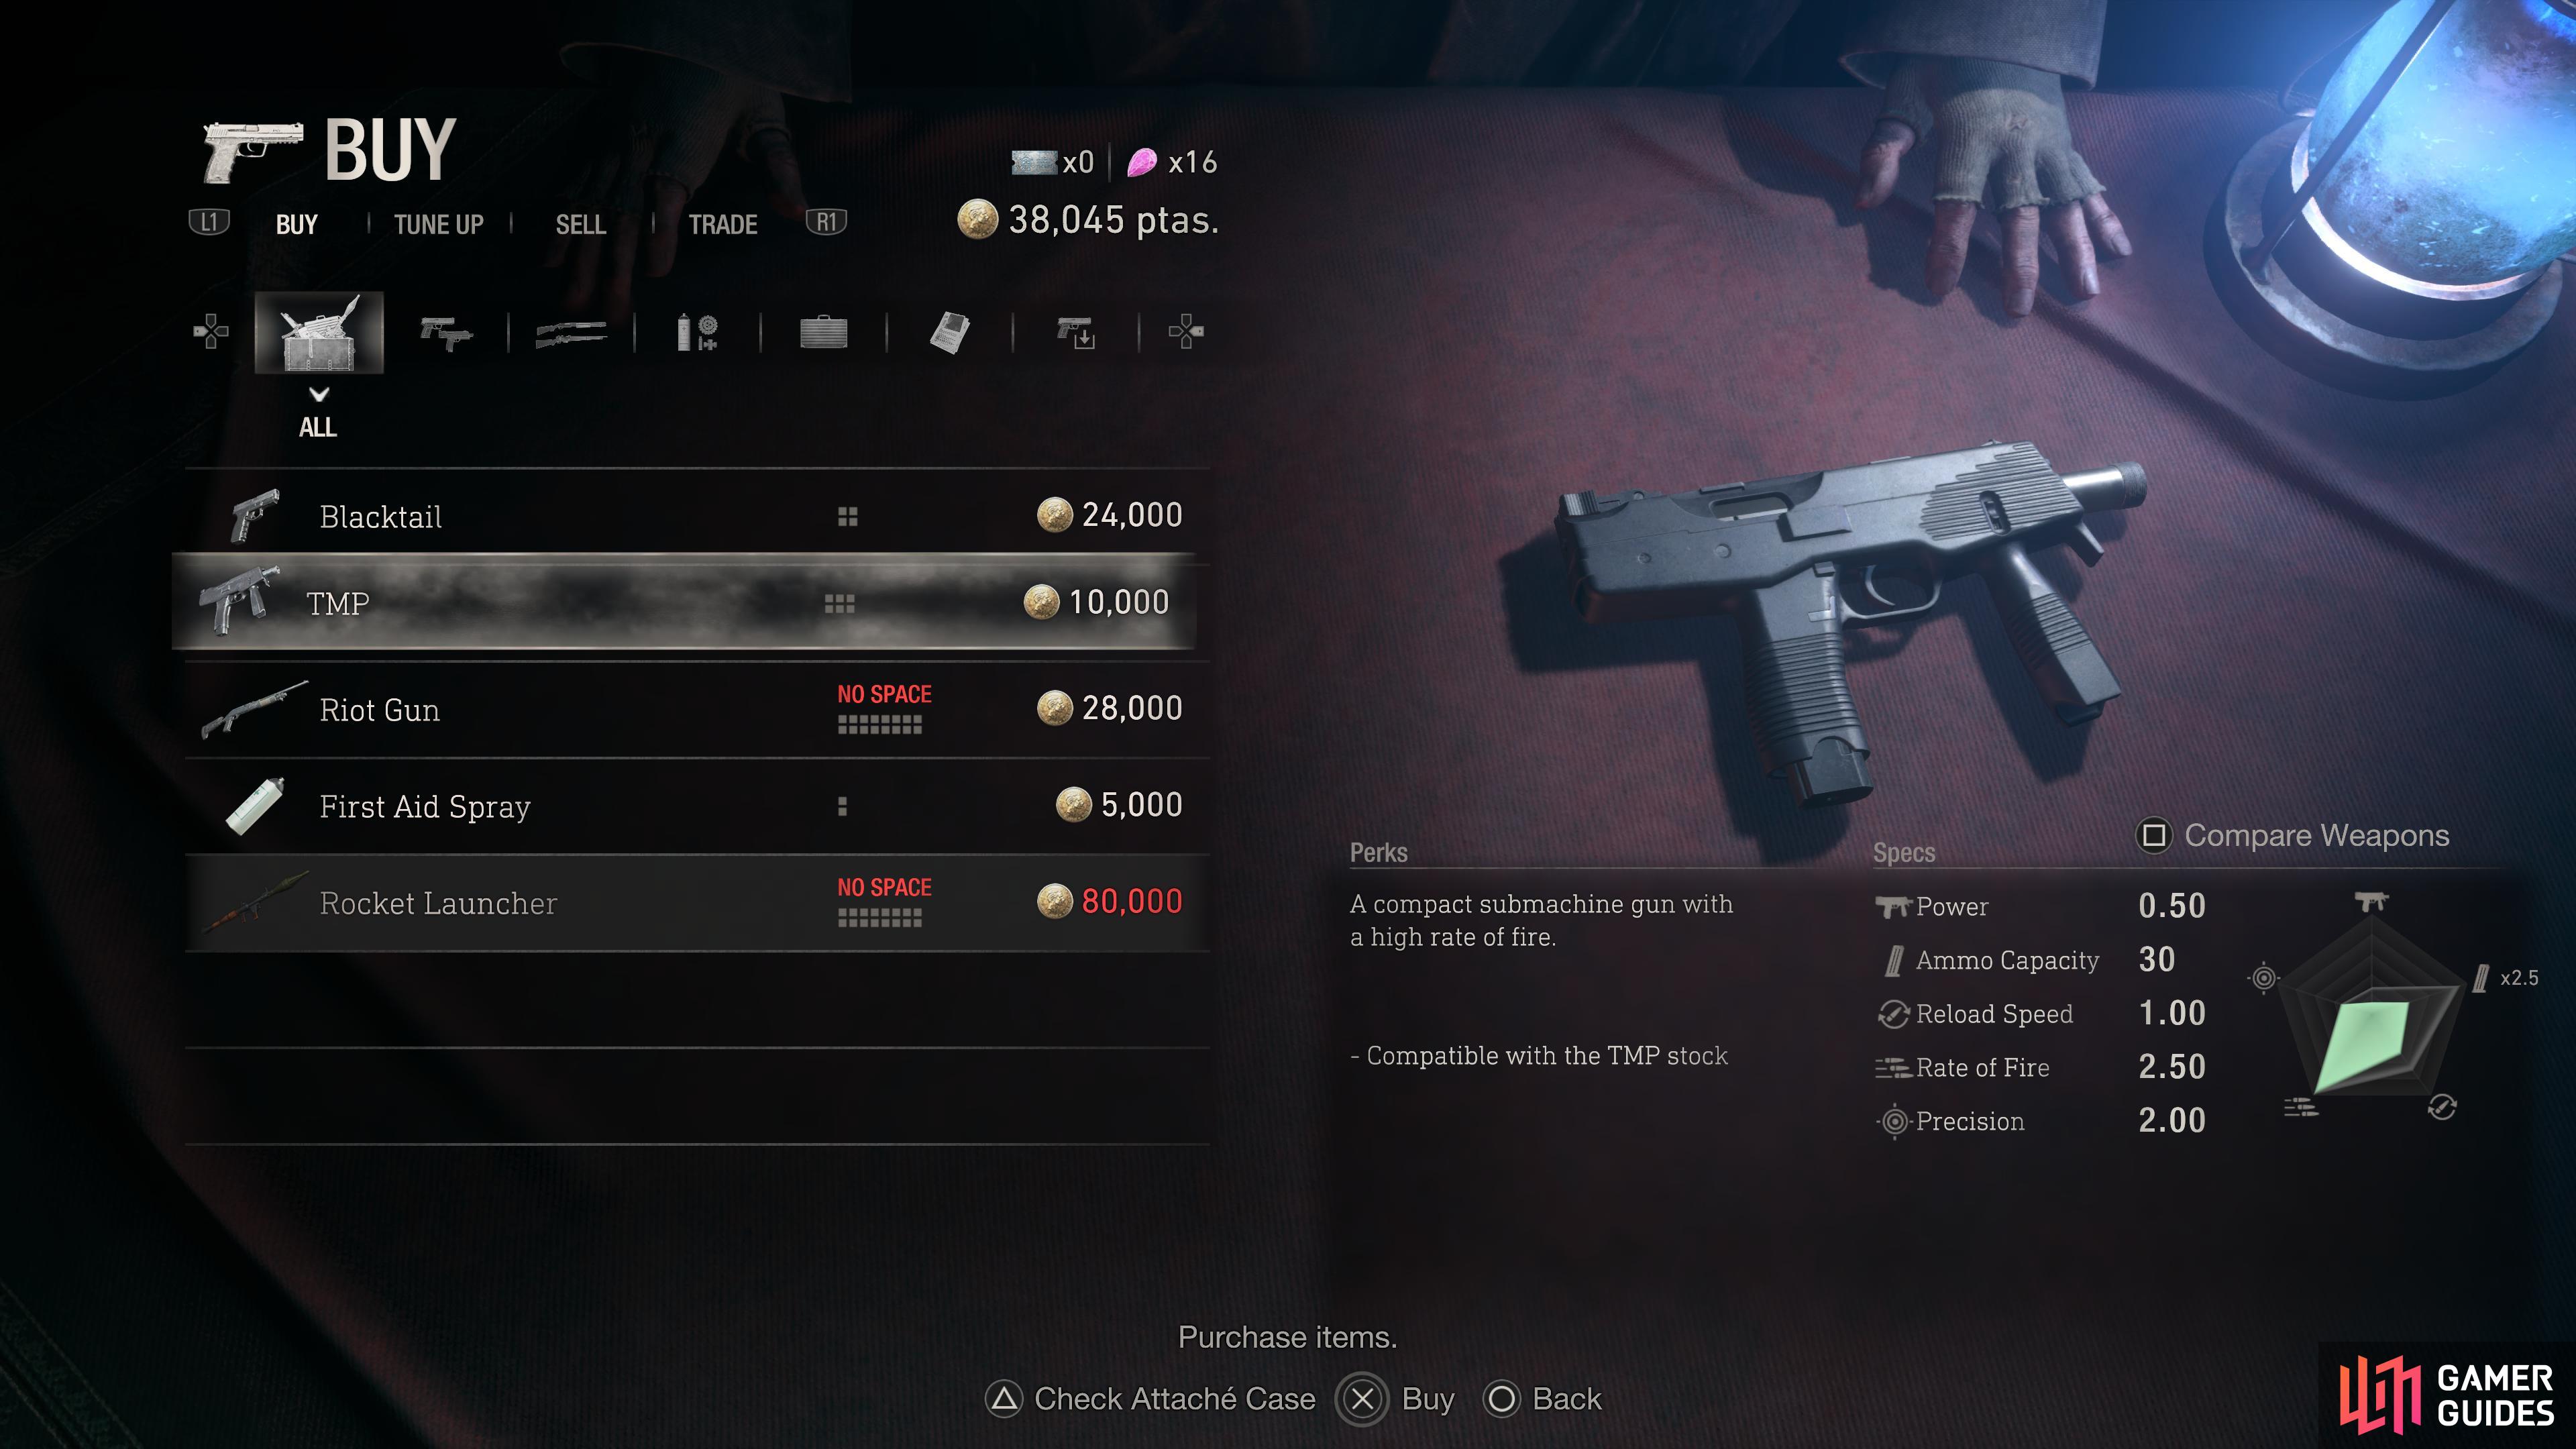 Resident Evil 4 Weapon Showcase: Pistols 